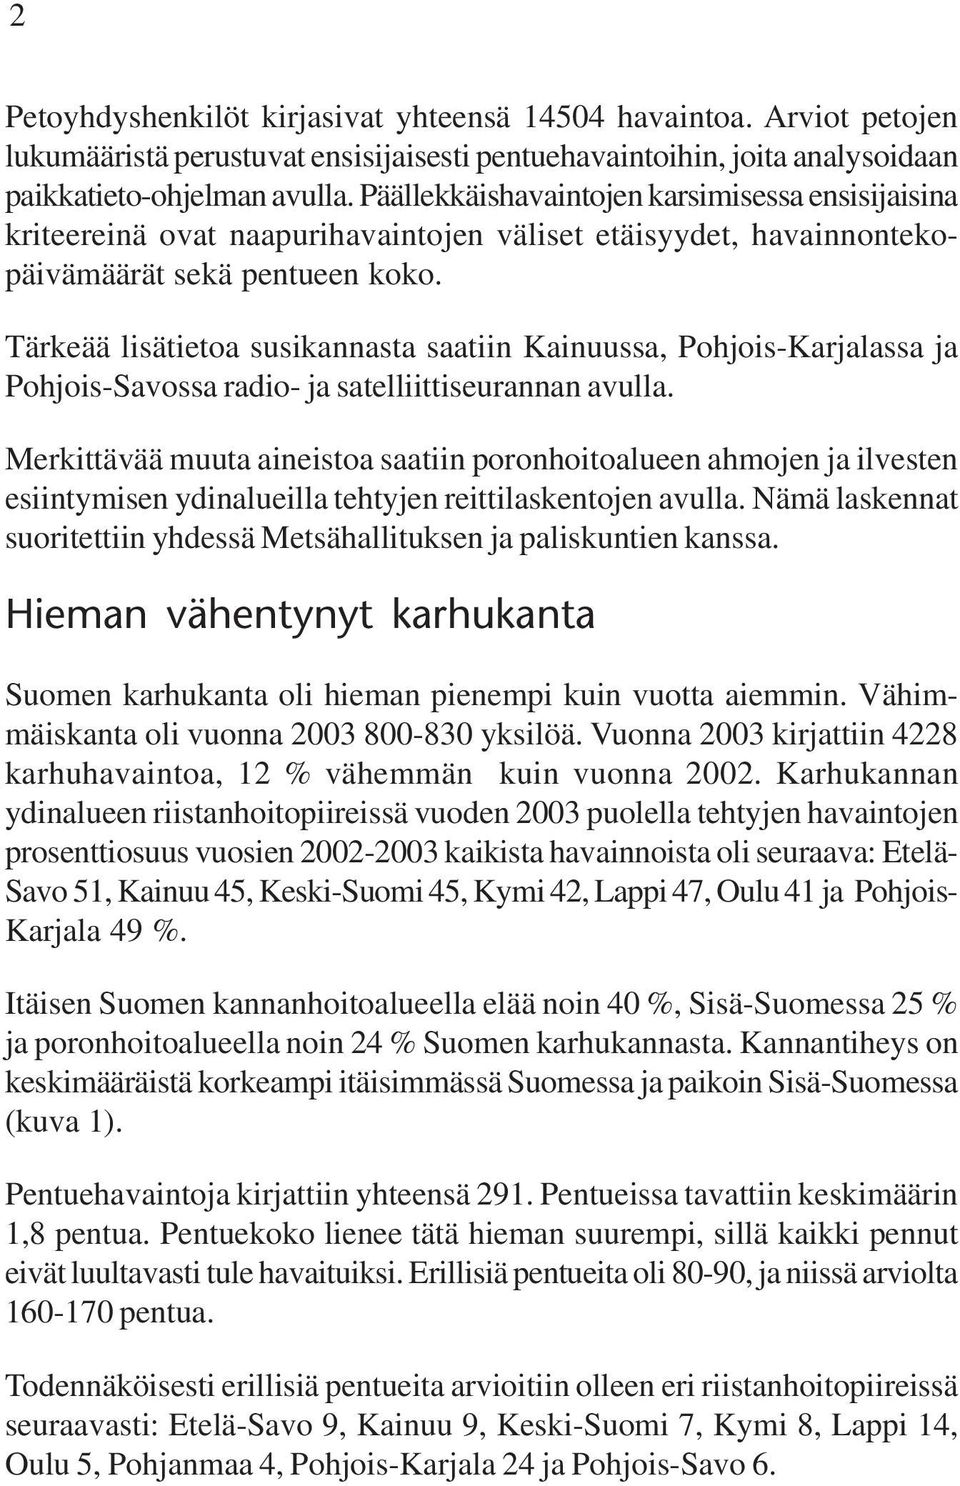 Tärkeää lisätietoa susikannasta saatiin Kainuussa, Pohjois-Karjalassa ja Pohjois-Savossa radio- ja satelliittiseurannan avulla.